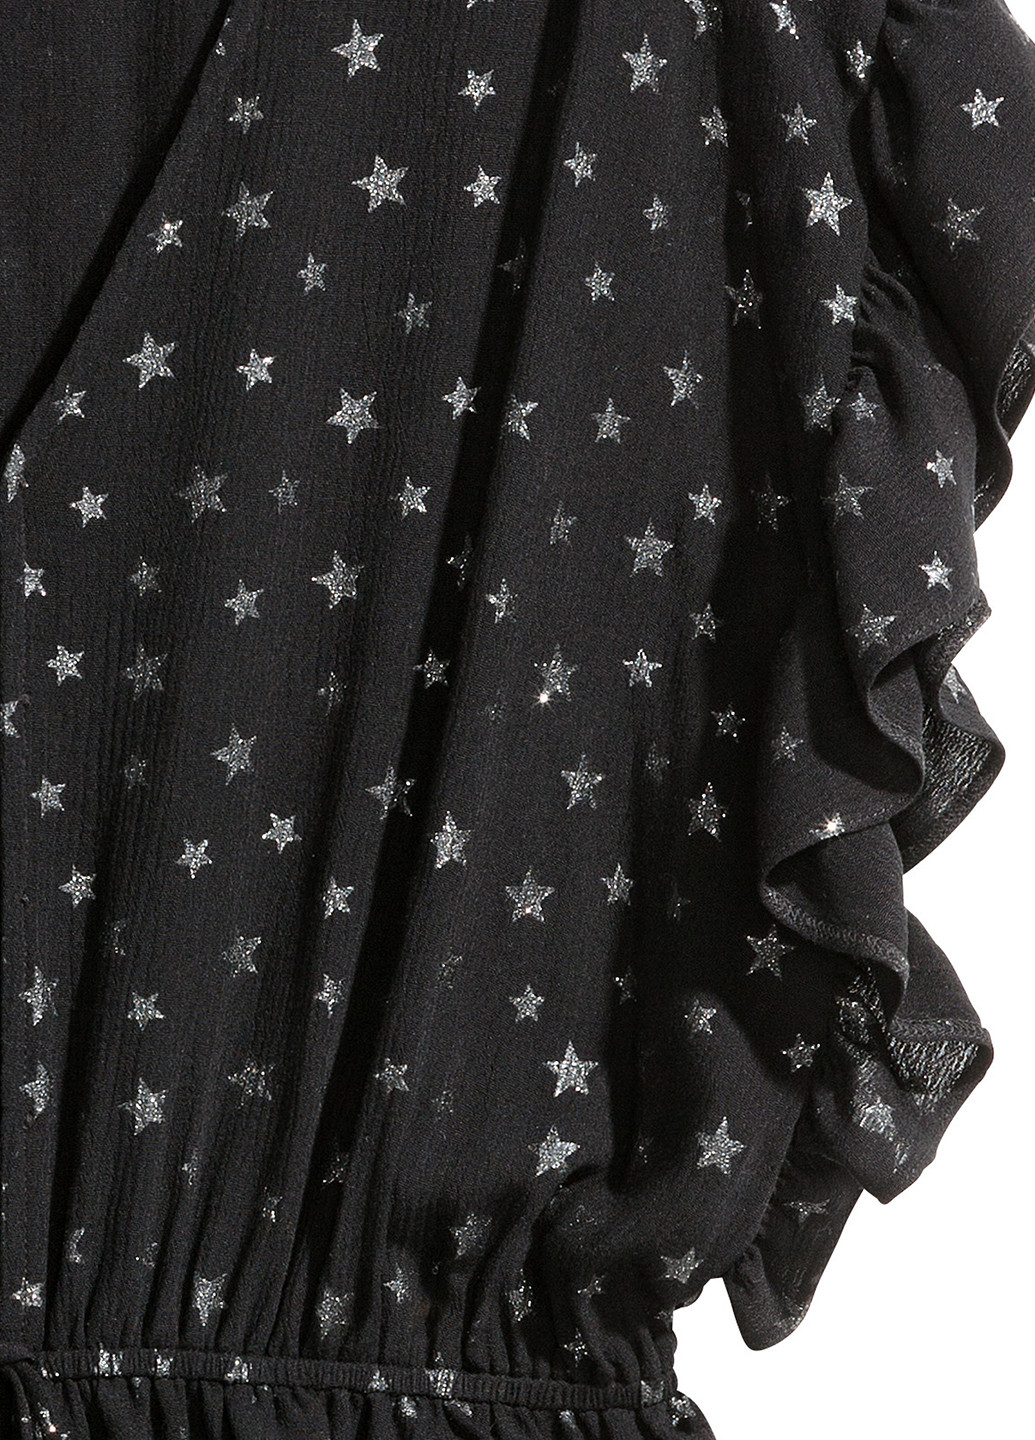 Комбинезон H&M комбинезон-шорты звезды чёрный кэжуал вискоза